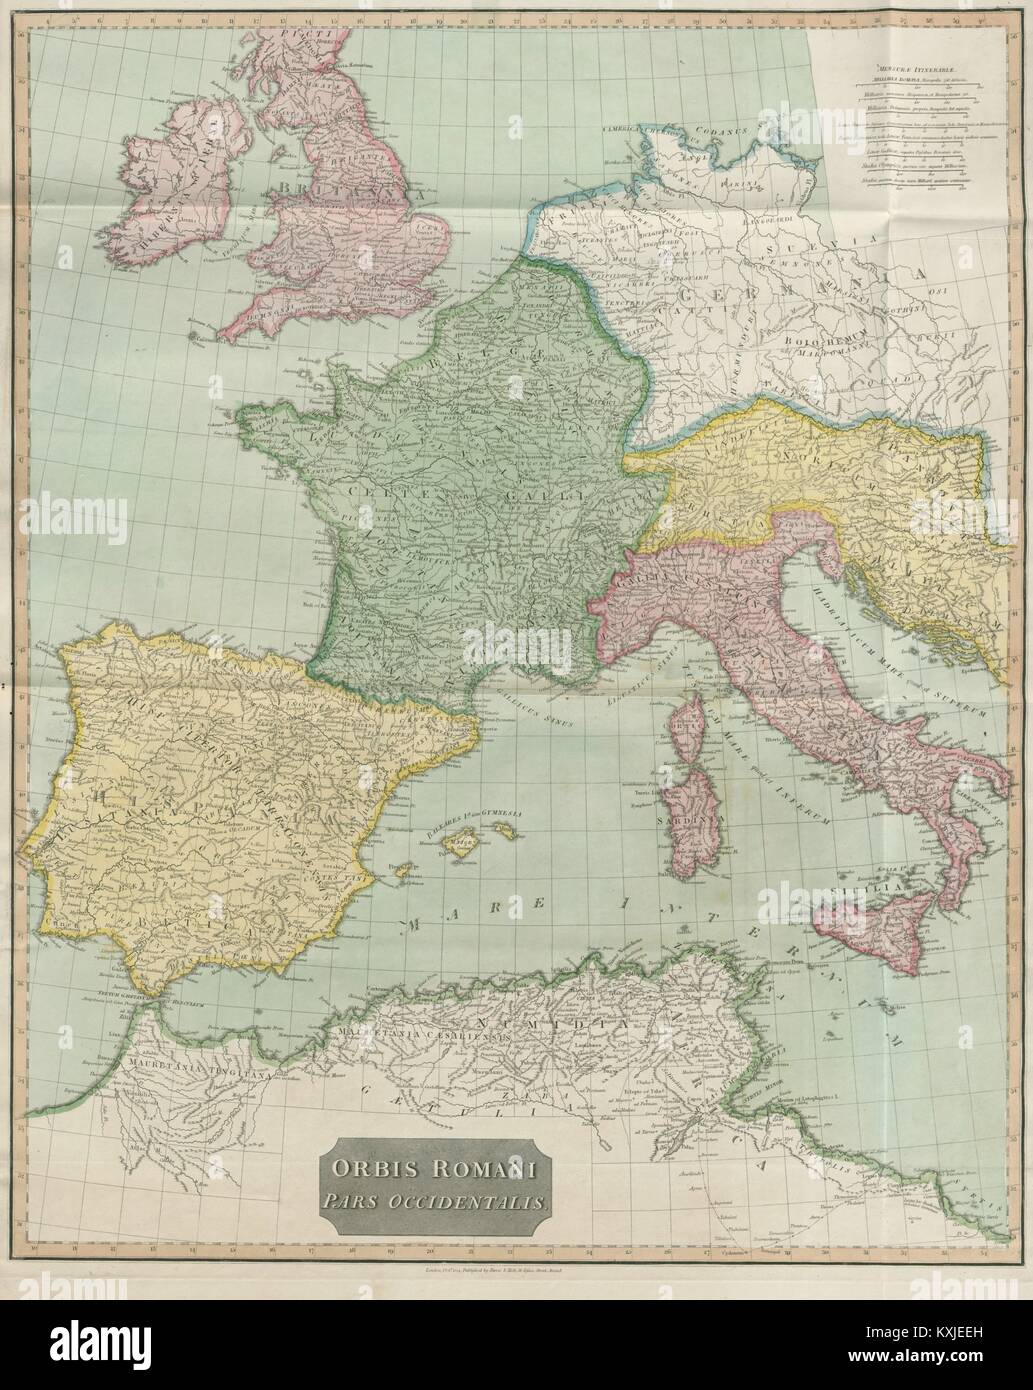 "Orbis Romani pars Occidentalis". Römische Reich westlichen Teil. D'Anville 1815 Karte Stockfoto